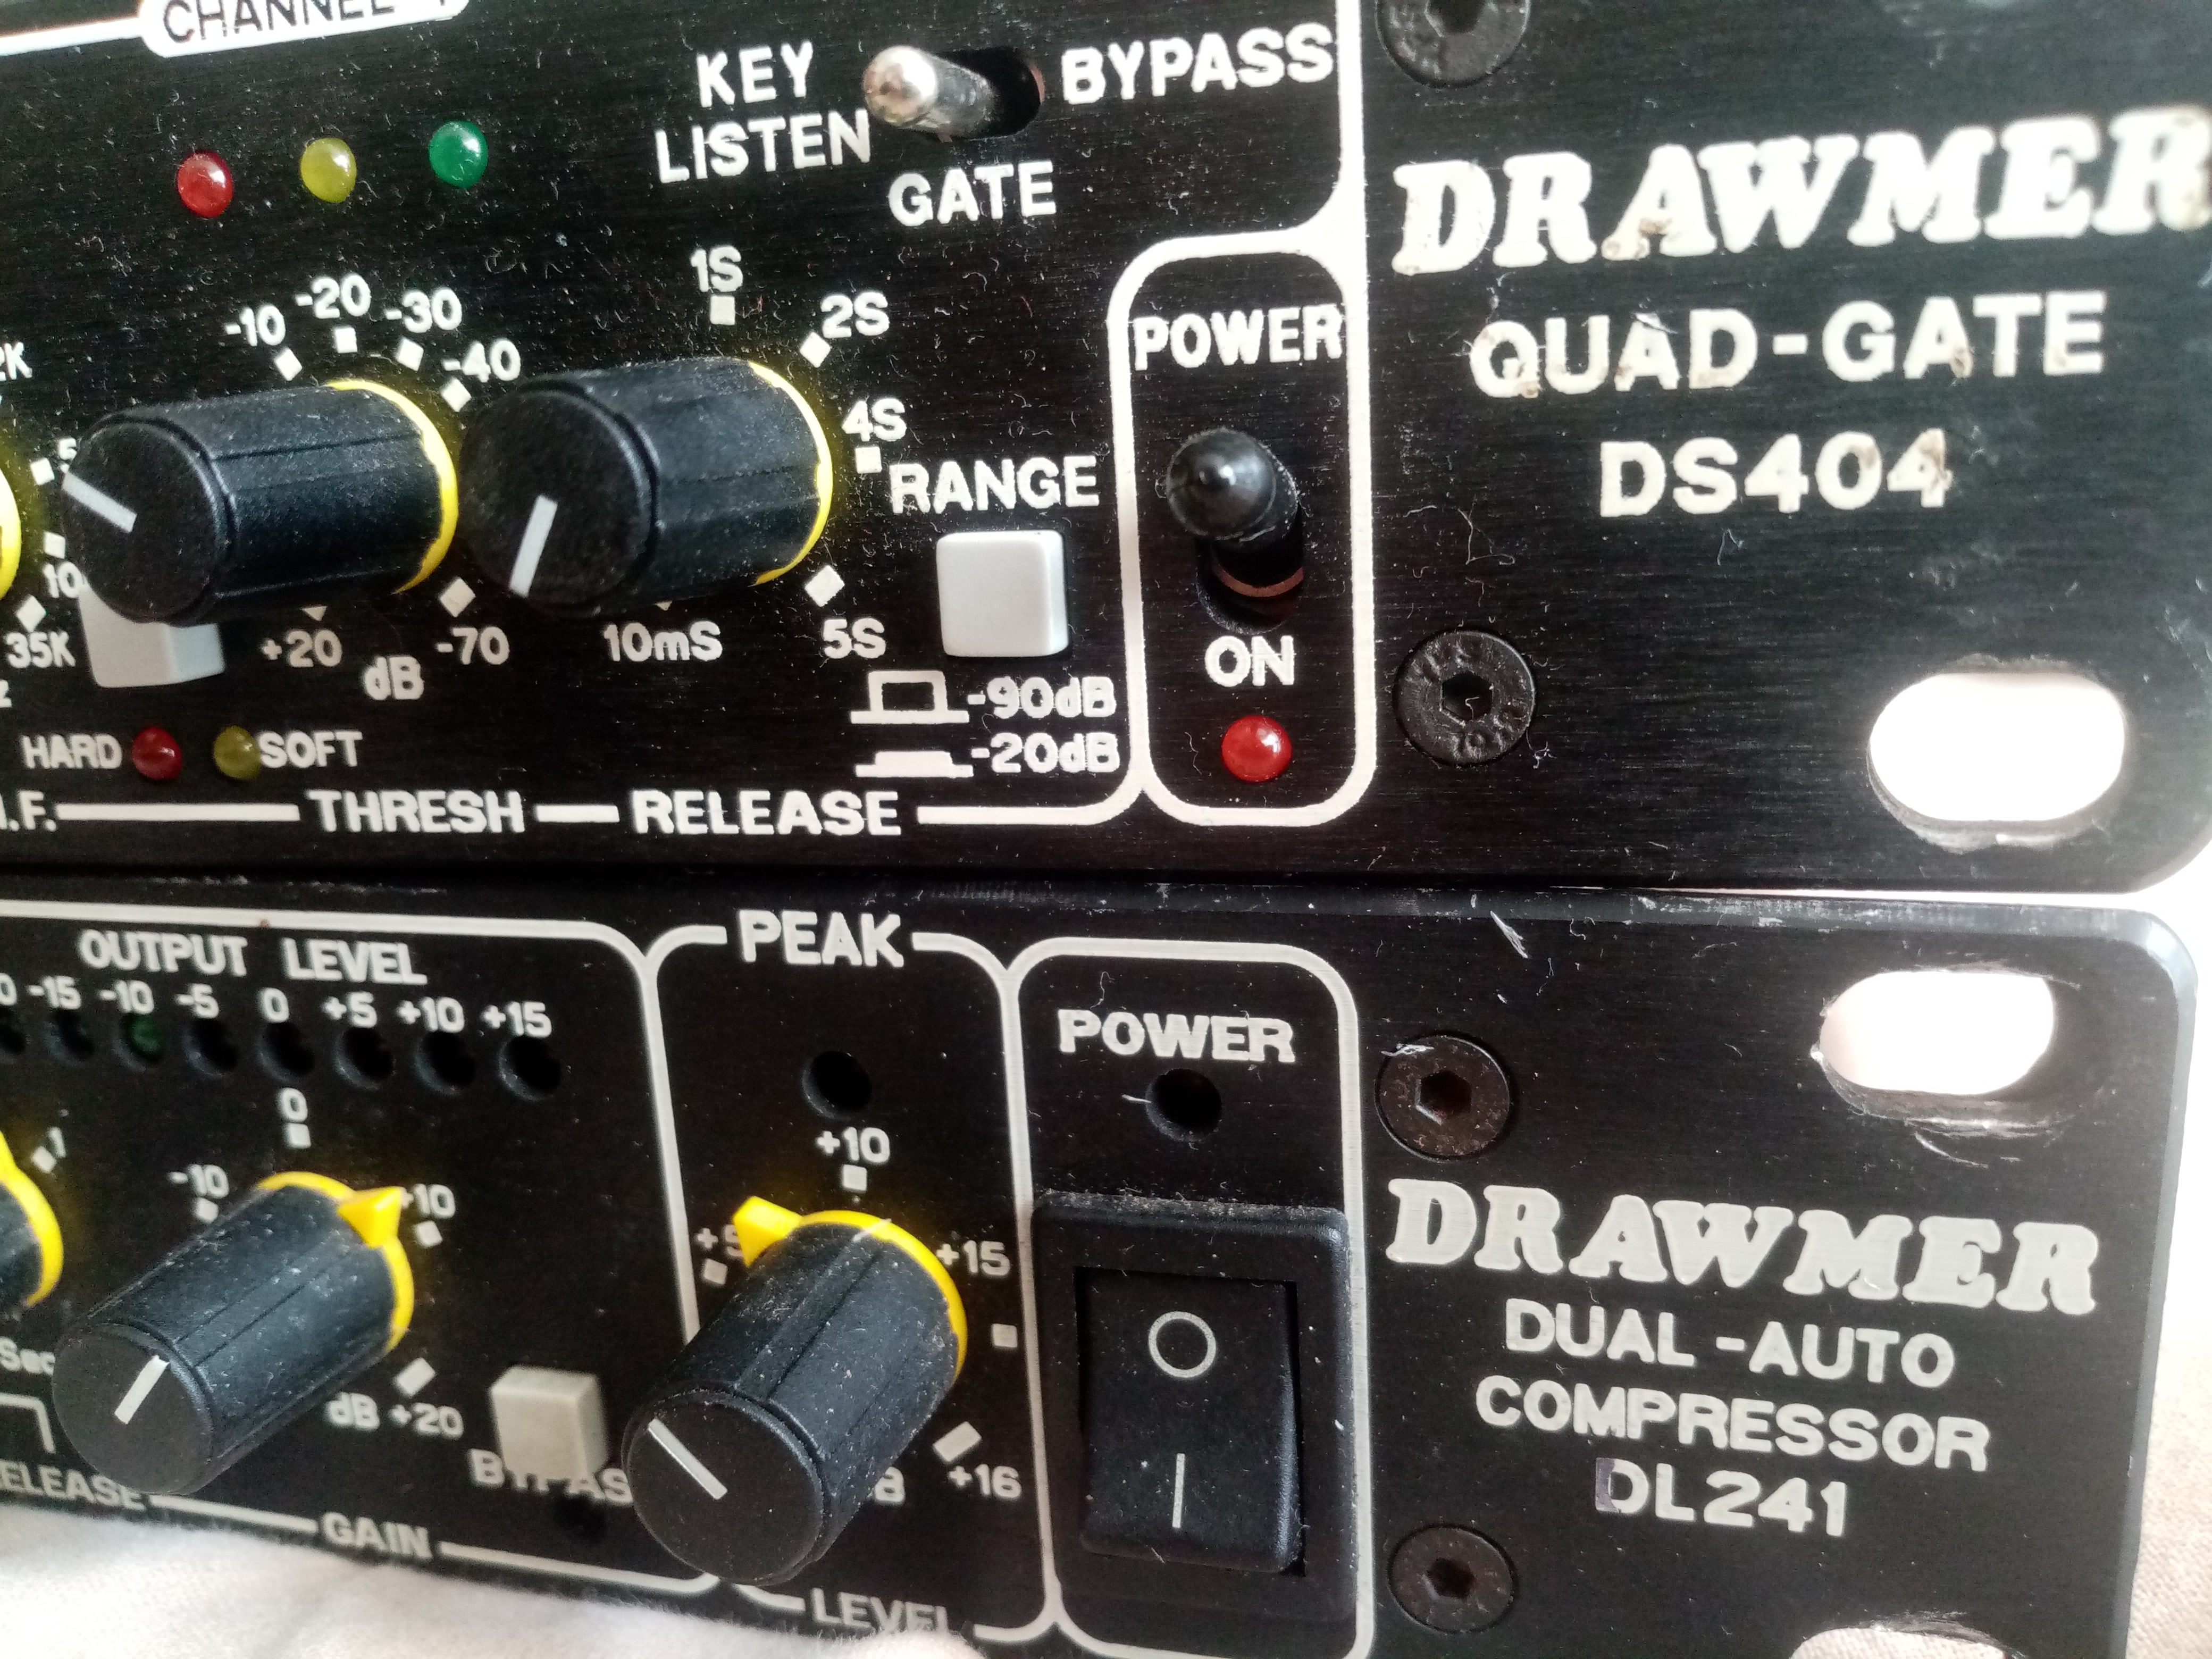 DL241 Auto Compressor - Drawmer DL241 Auto Compressor - Audiofanzine